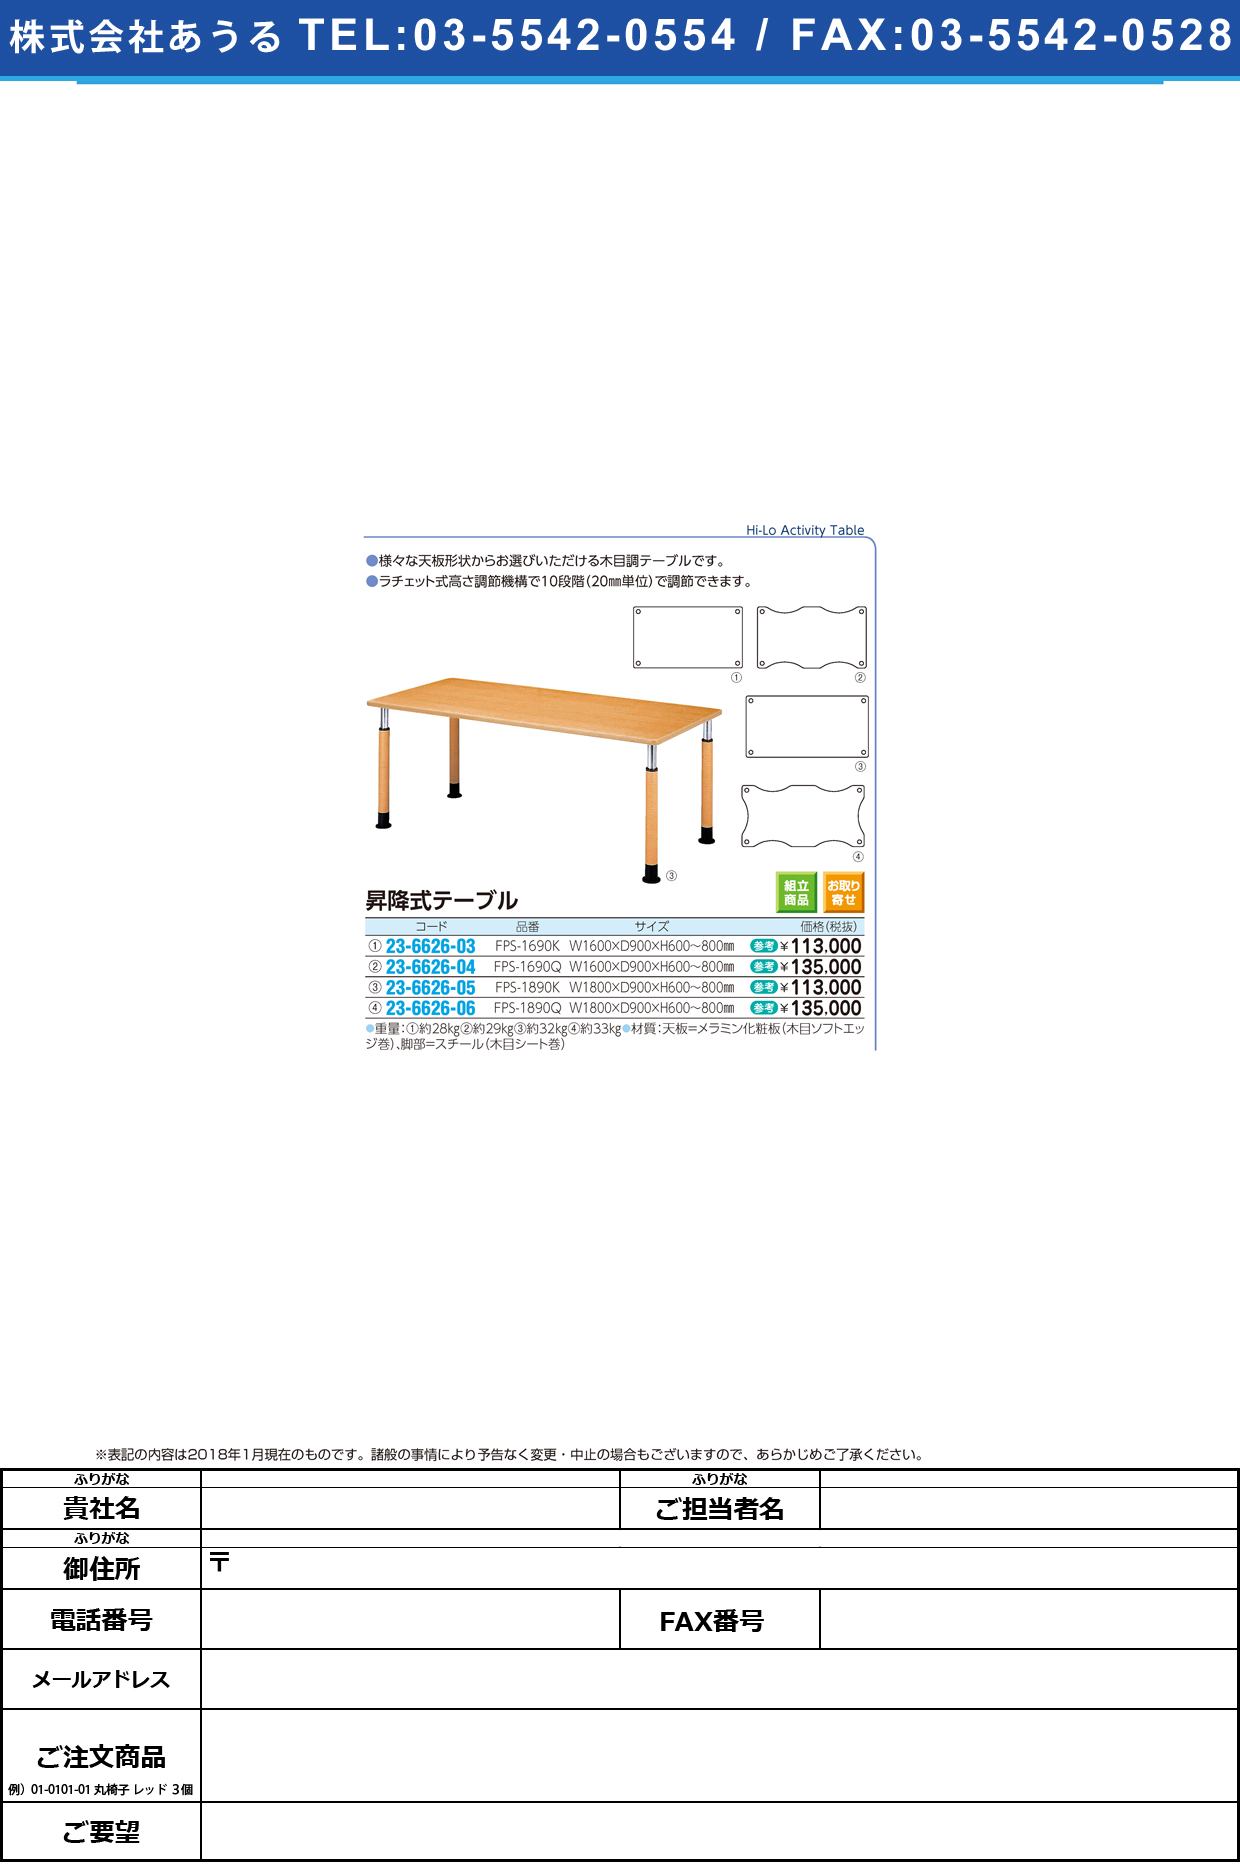 (23-6626-03)昇降式テーブル FPS-1690K(W160XD90CM ｼｮｳｺｳｼｷﾃｰﾌﾞﾙ【1台単位】【2019年カタログ商品】